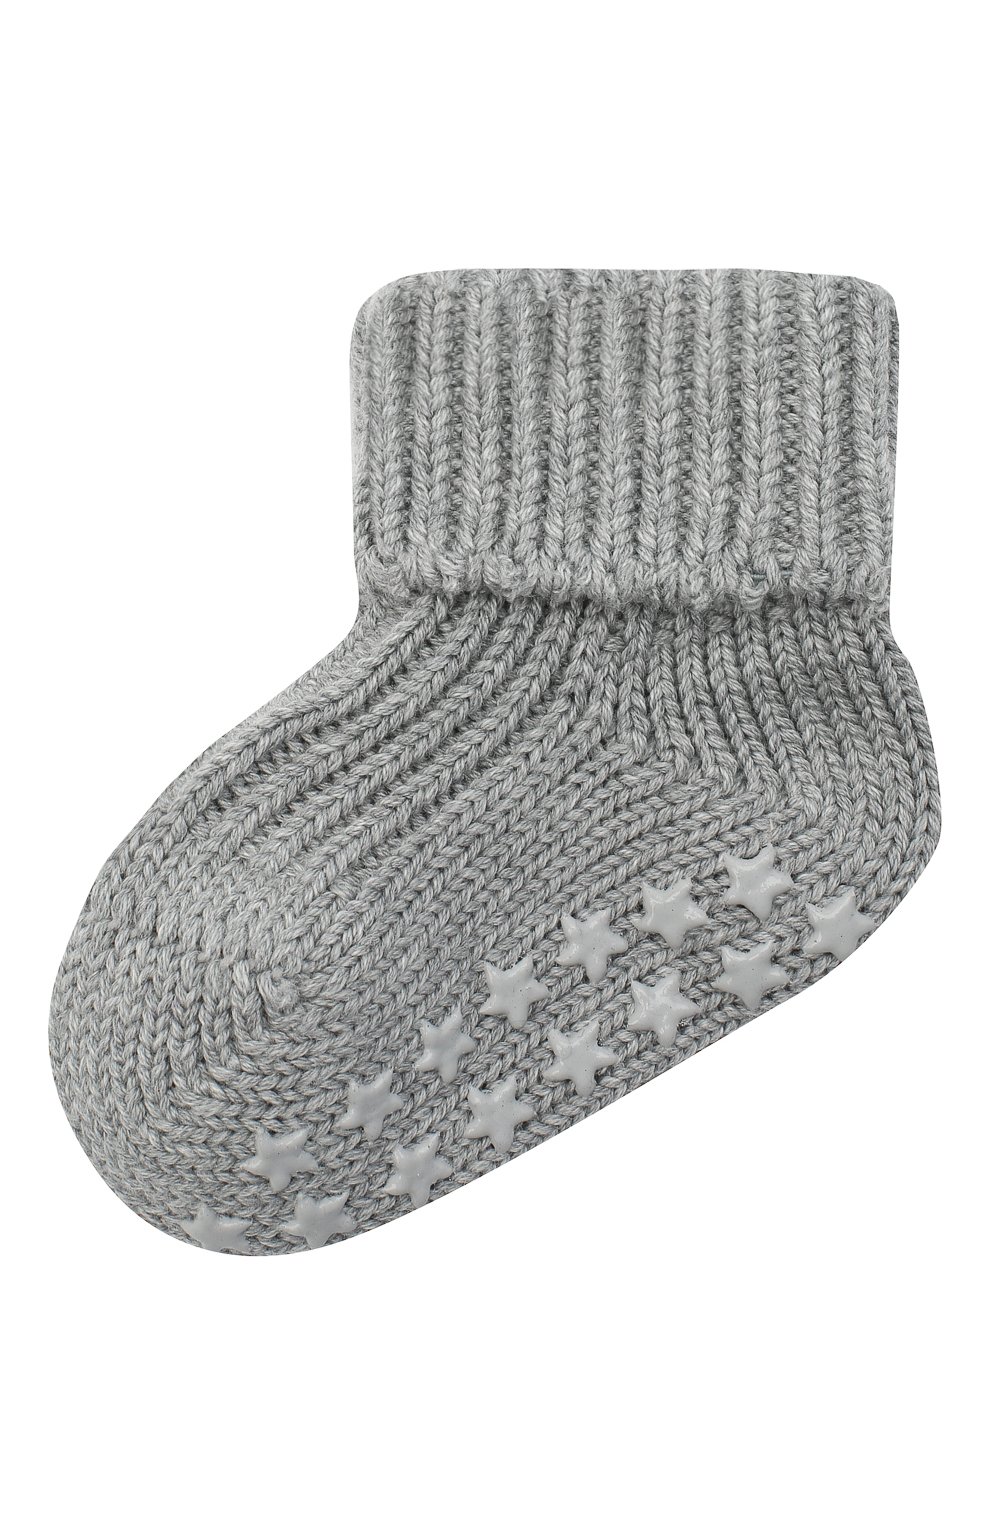 Детские хлопковые носки FALKE серого цвета, арт. 10603. | Фото 1 (Материал: Текстиль, Хлопок)